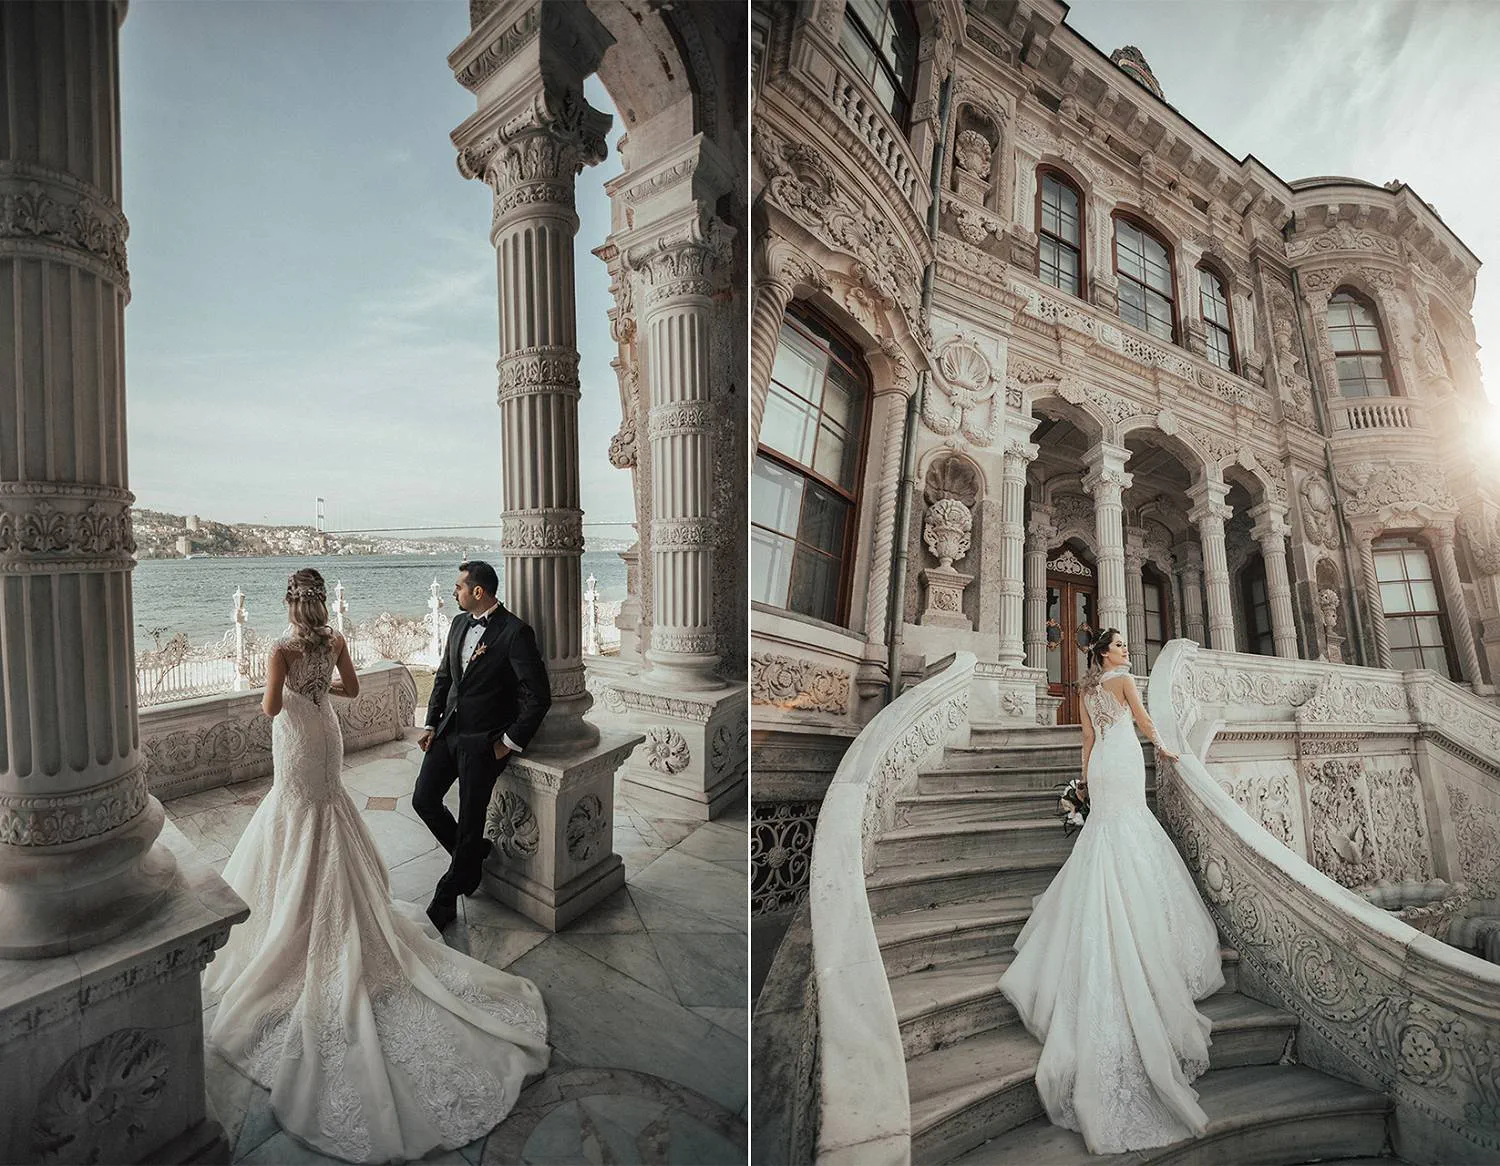 A vibrant wedding in Türkiye (Turkey) - Bride Life Style